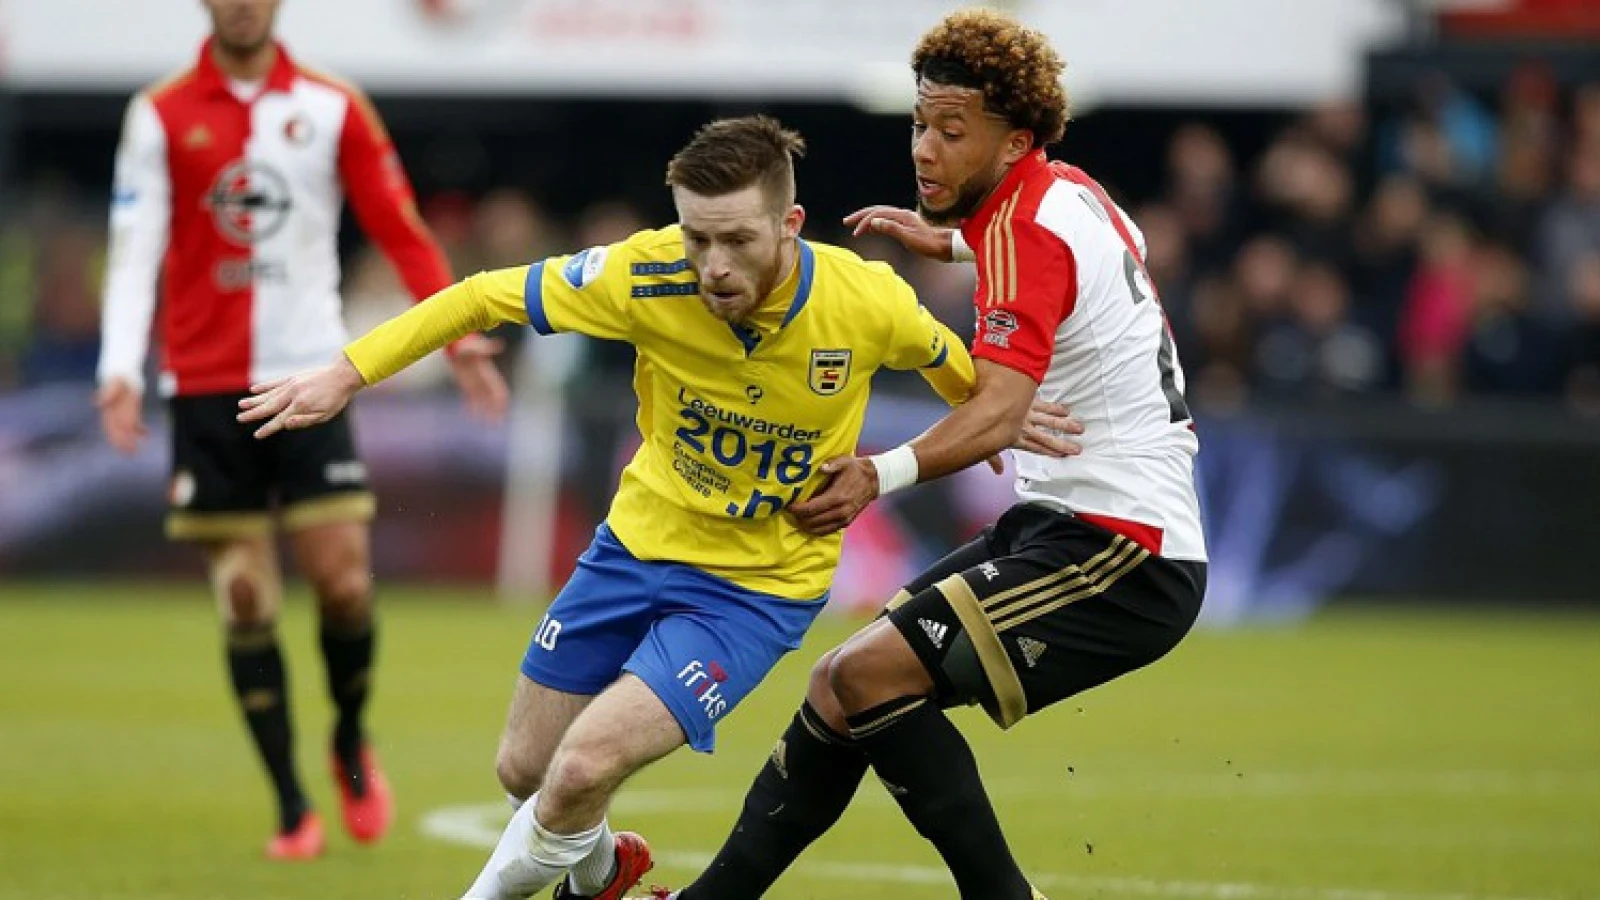 SC Cambuur officieel gepromoveerd naar Eredivisie na puntenverlies Almere City